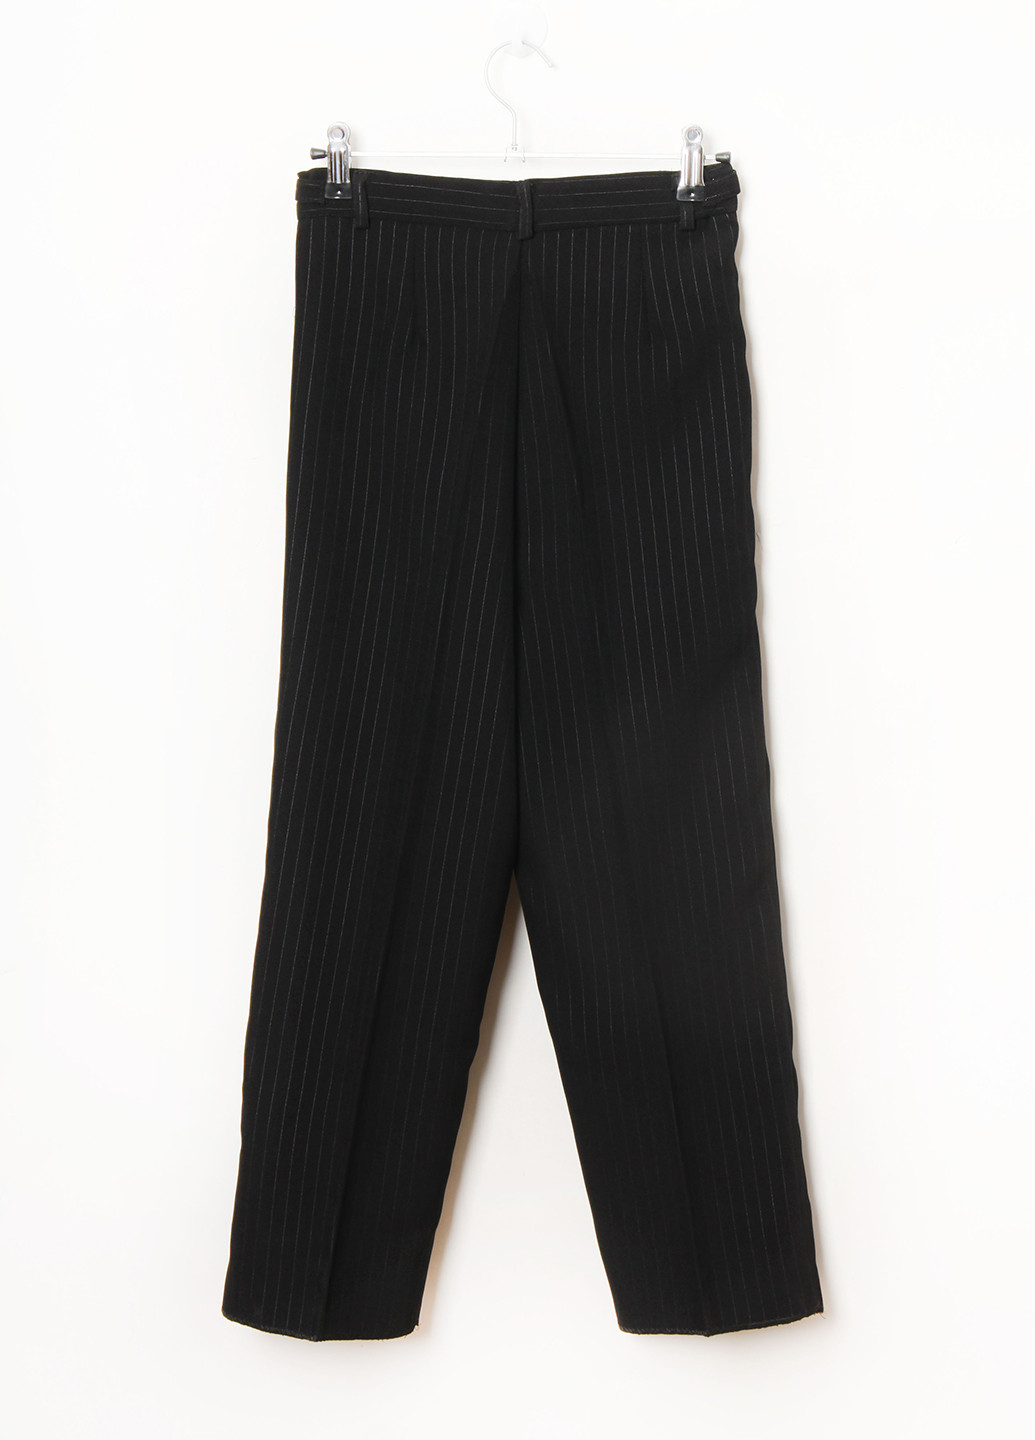 Черный демисезонный костюм (пиджак, жилет, брюки) тройка Mtp